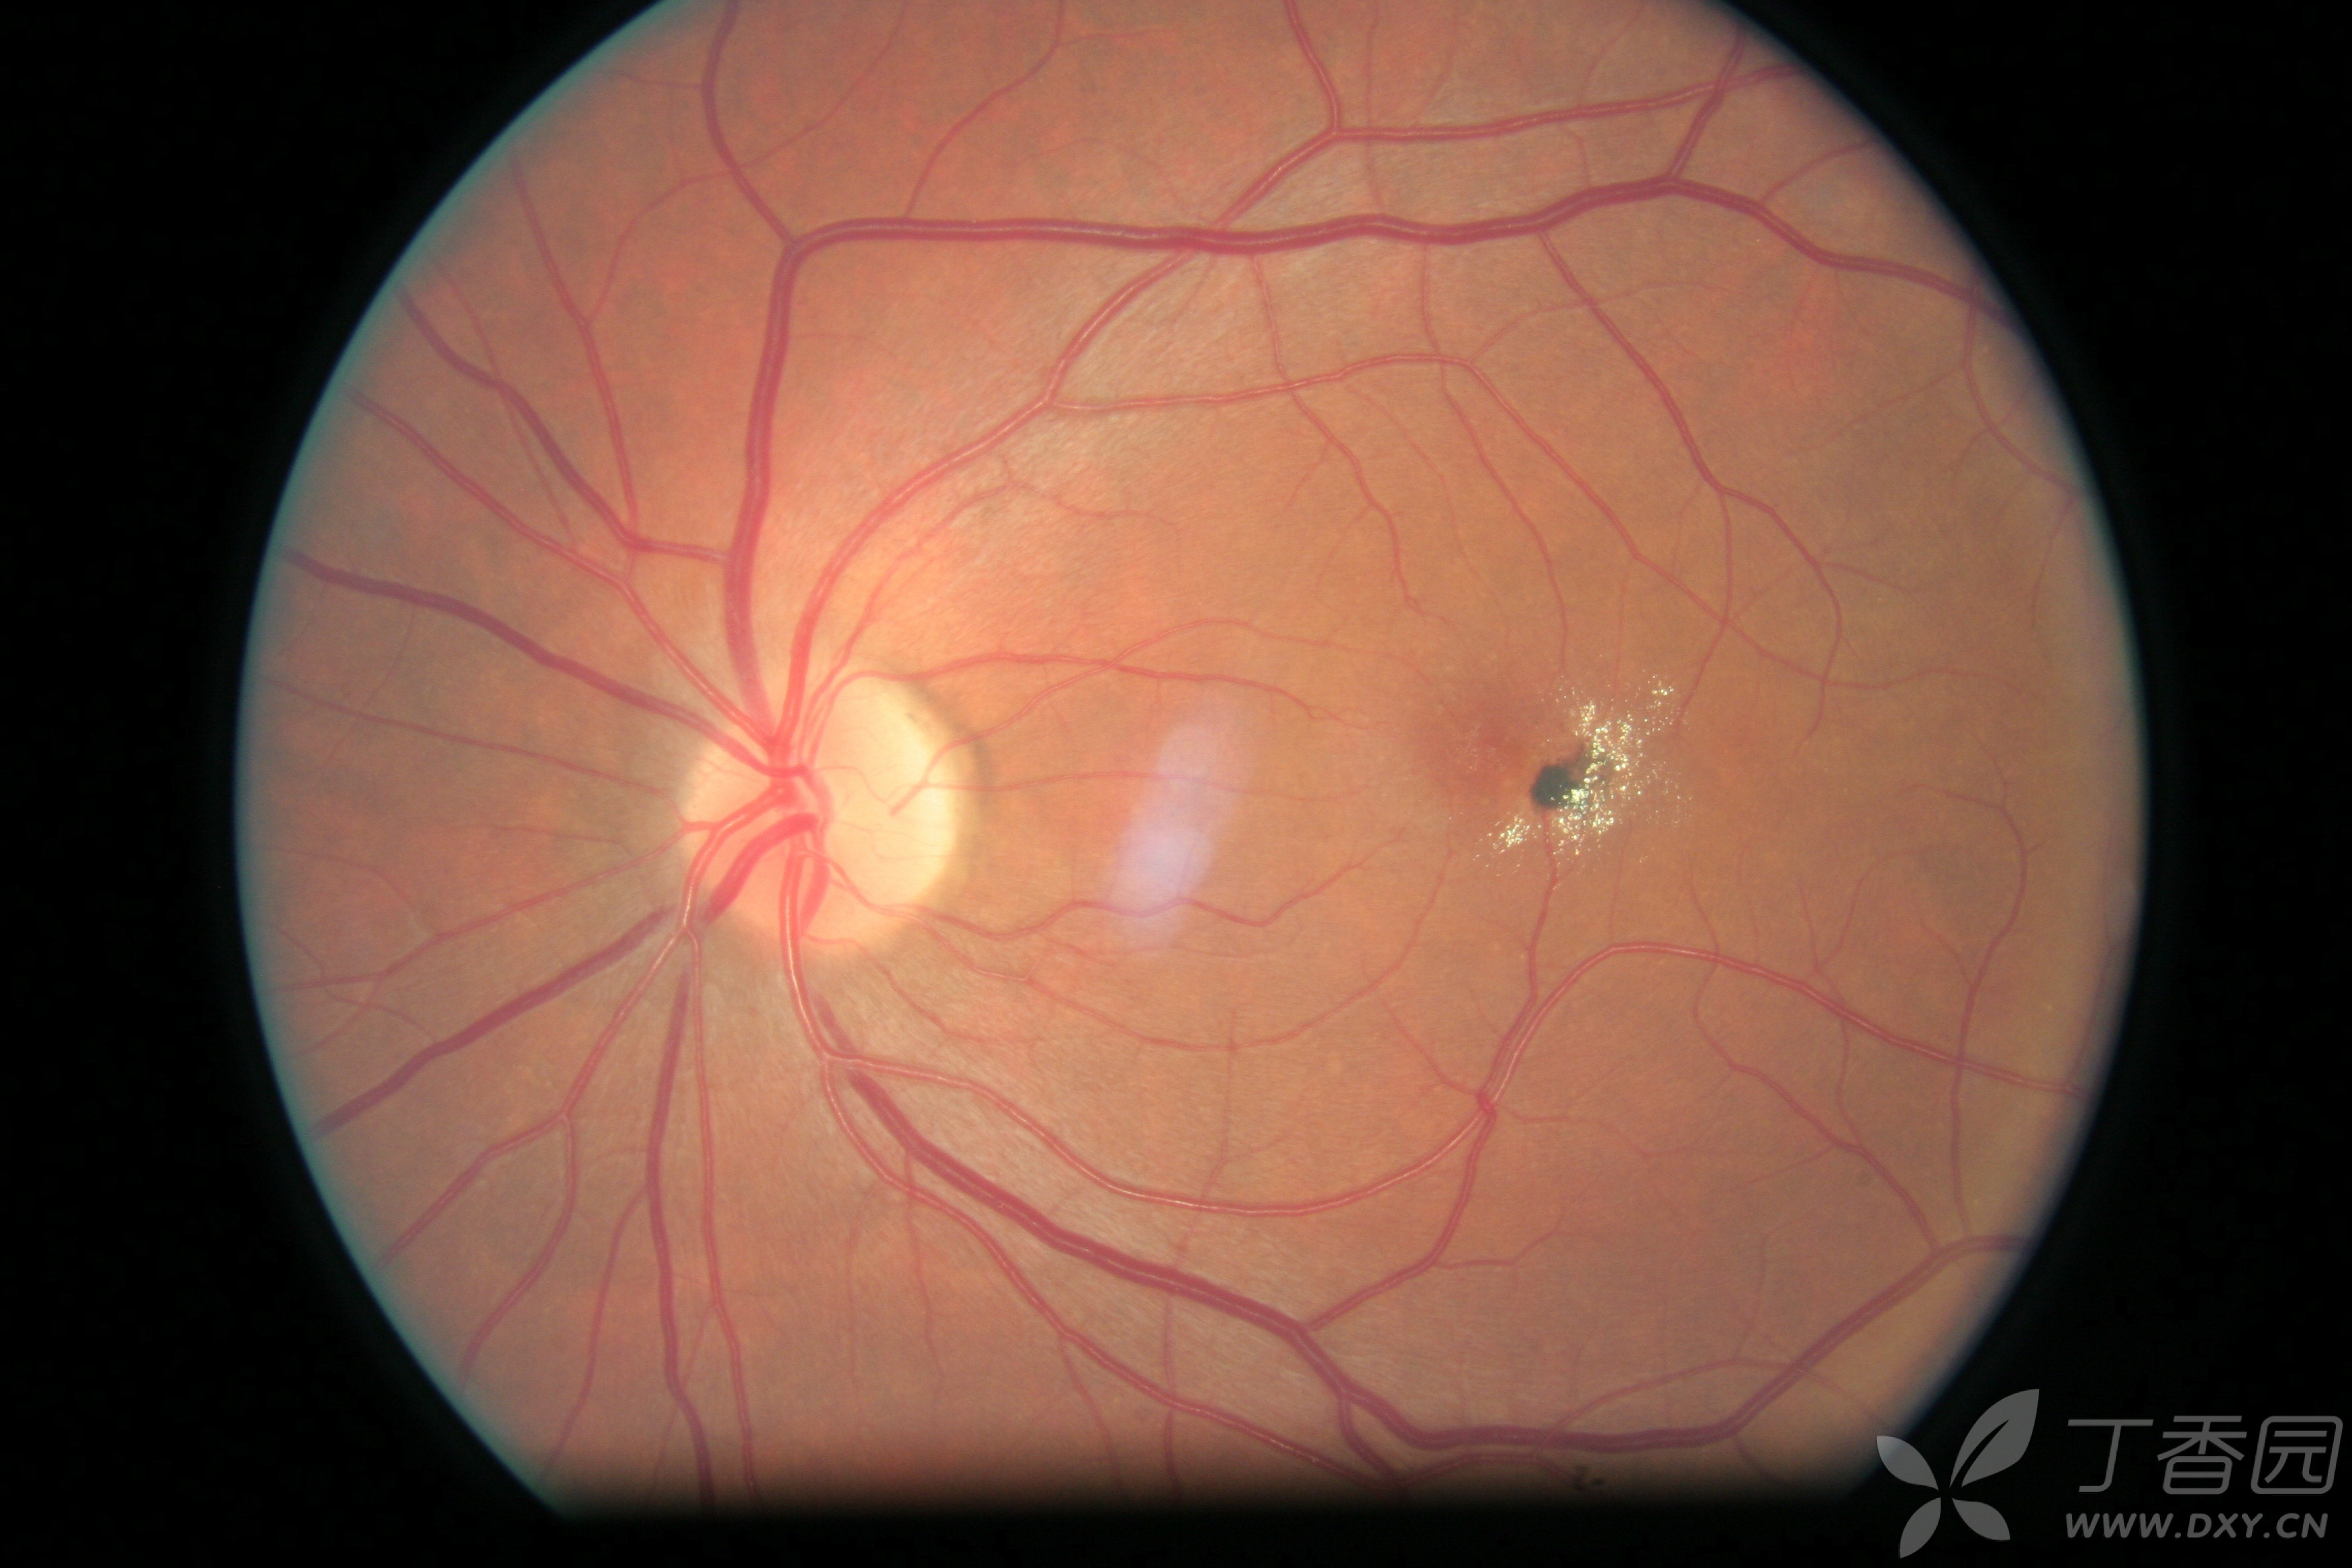 求眼科大神看一看这个眼底,圆形出血病灶周围有点状硬性渗出,是血管瘤